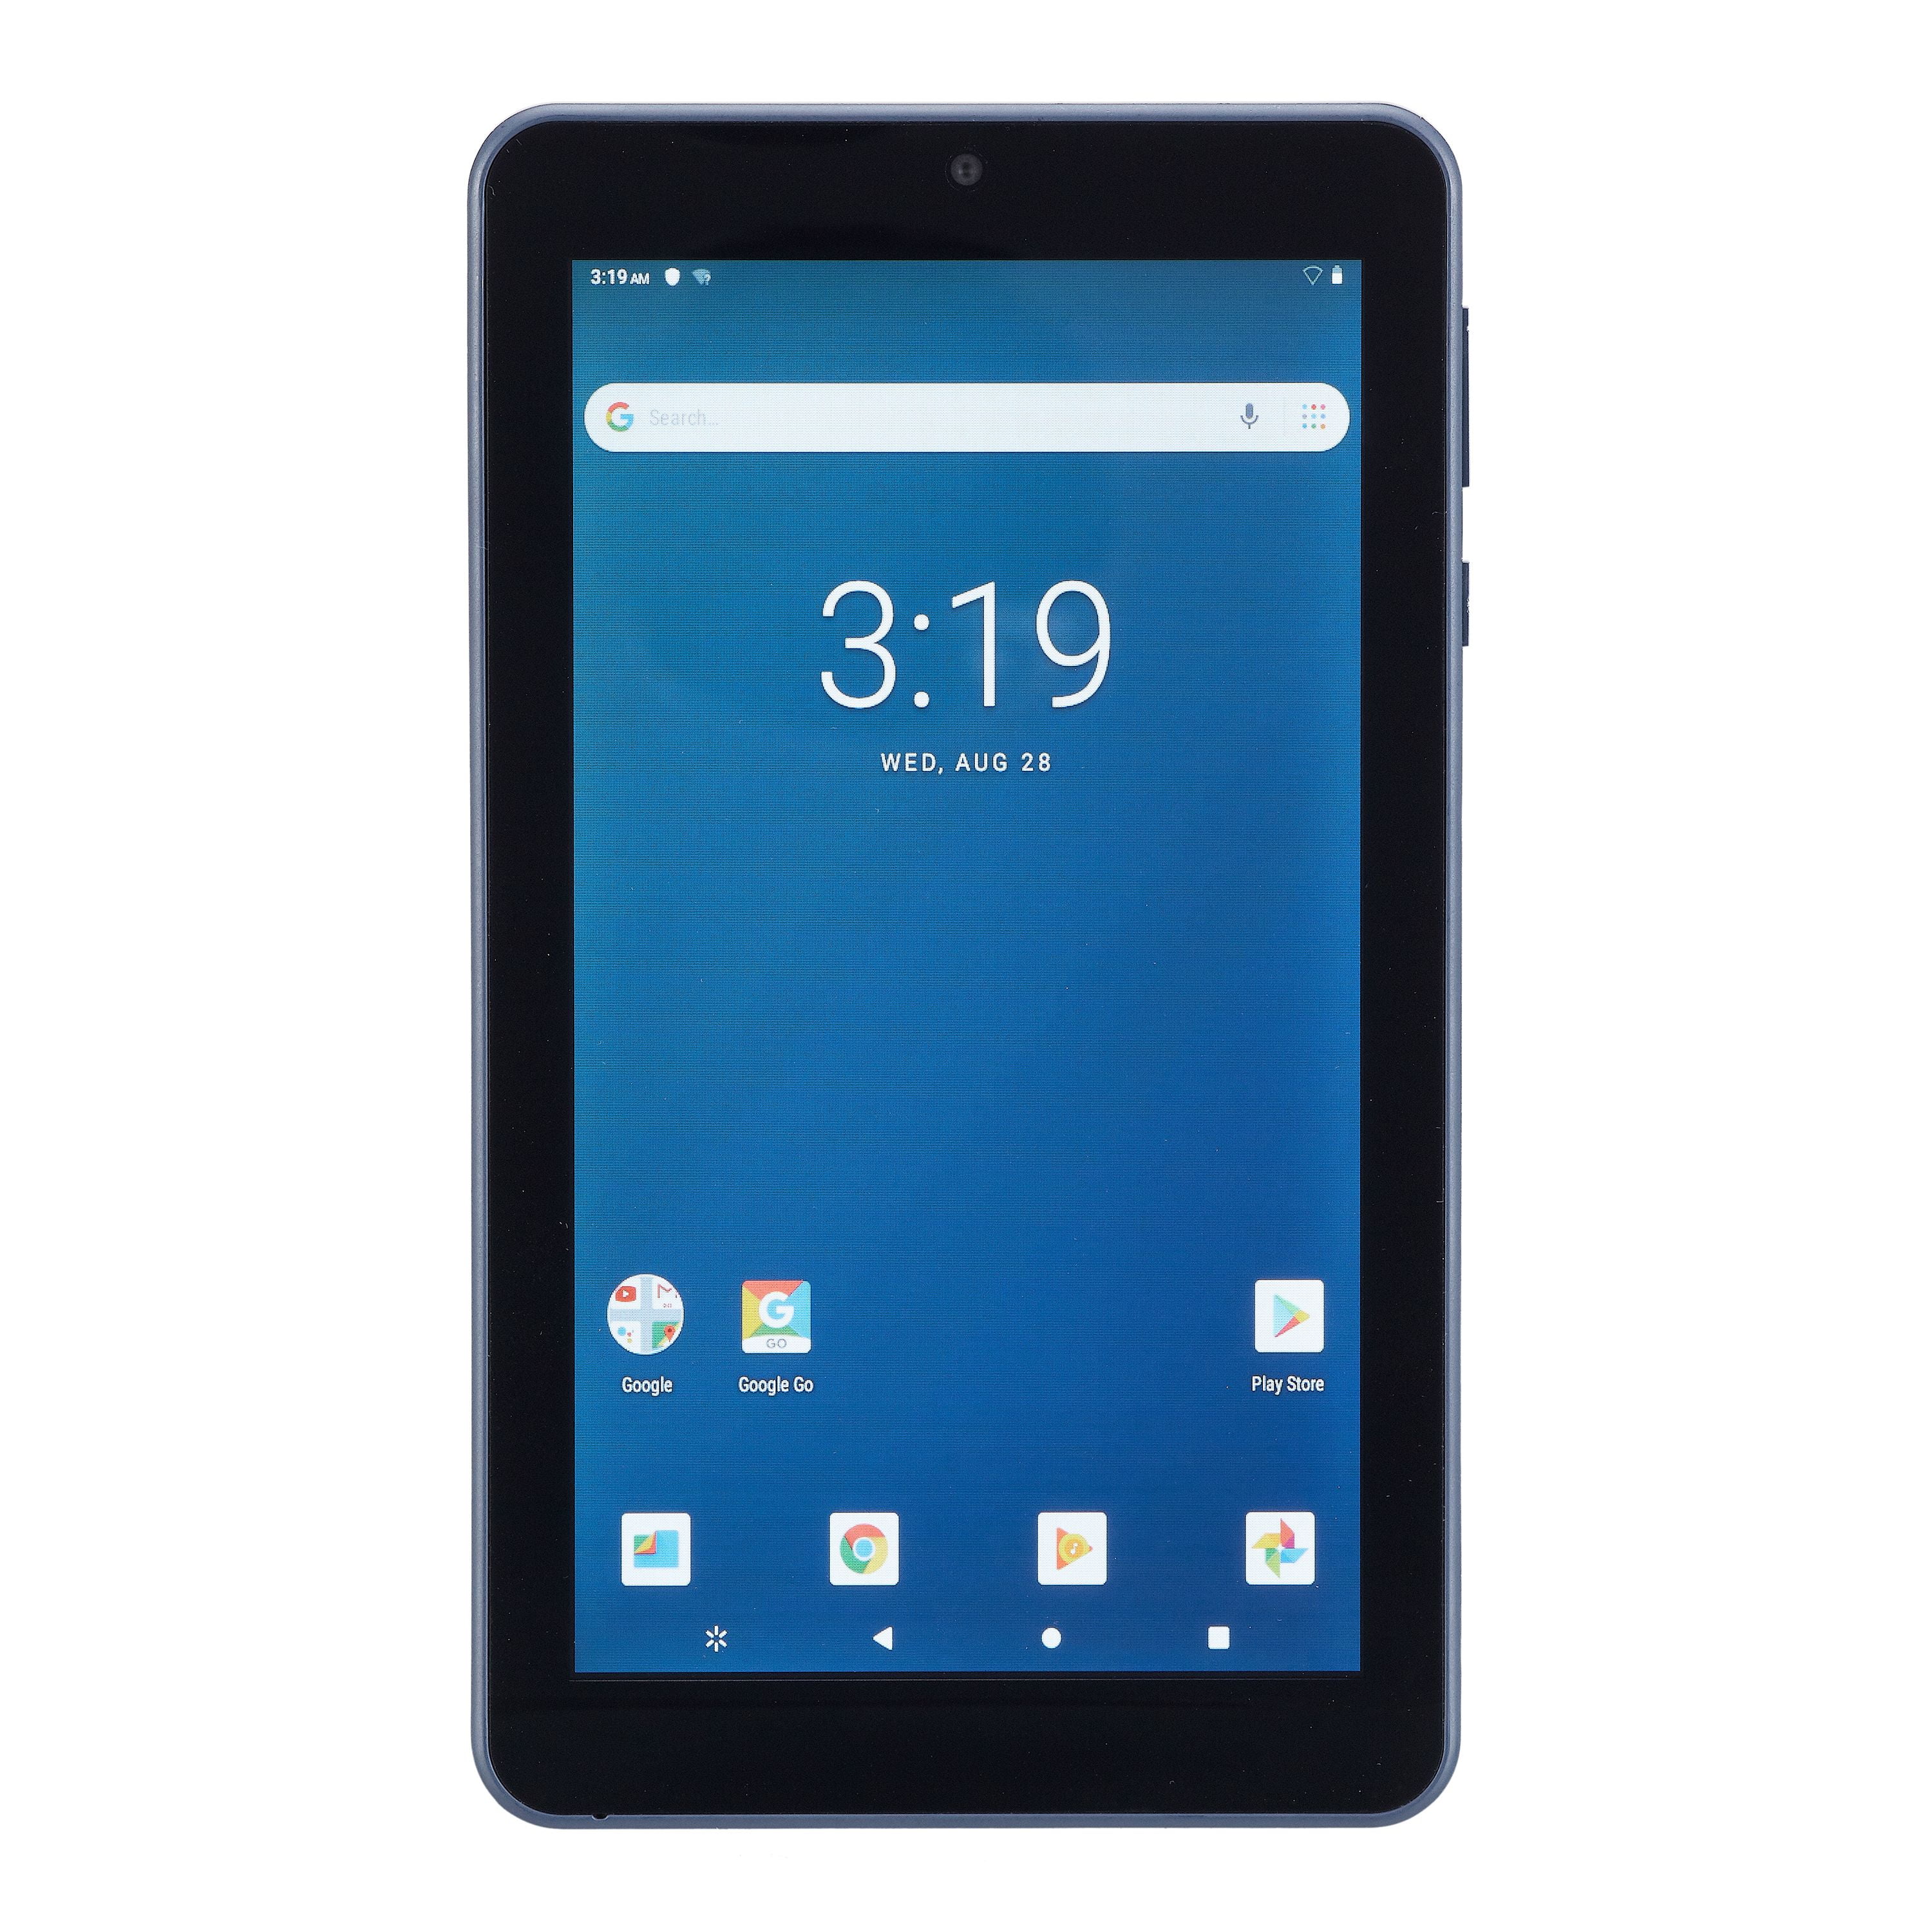 onn. Android Tablet, 28", 28GB Storage, Bonus $28 off Walmart eBooks Included